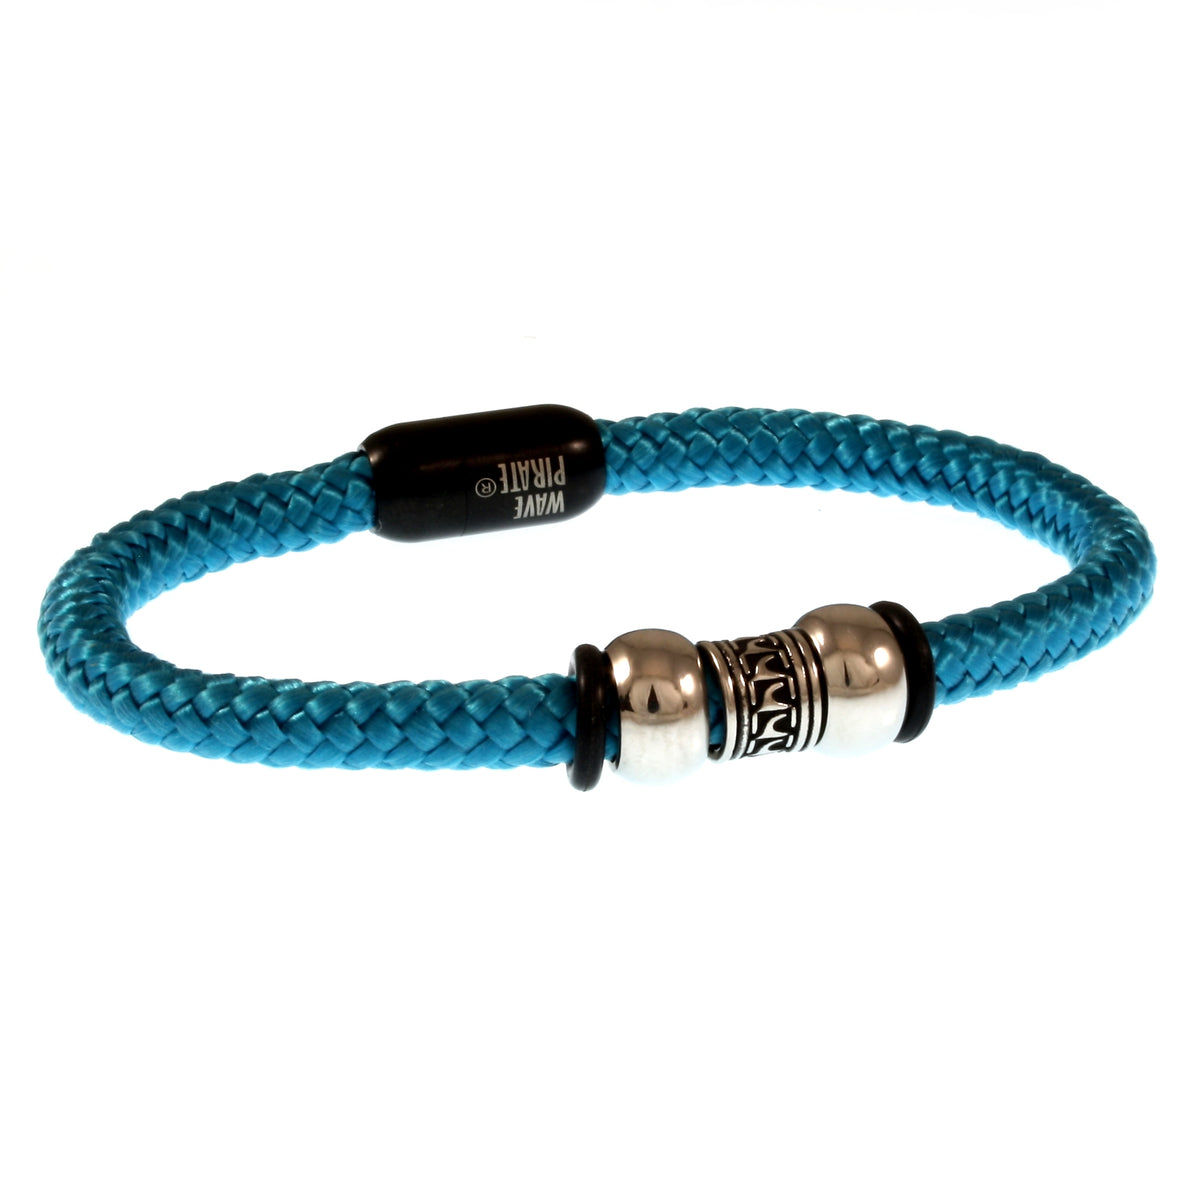 Herren-Segeltau-Armband-atoll-blau-schwarz-geflochten-Edelstahlverschluss-vorn-wavepirate-shop-st